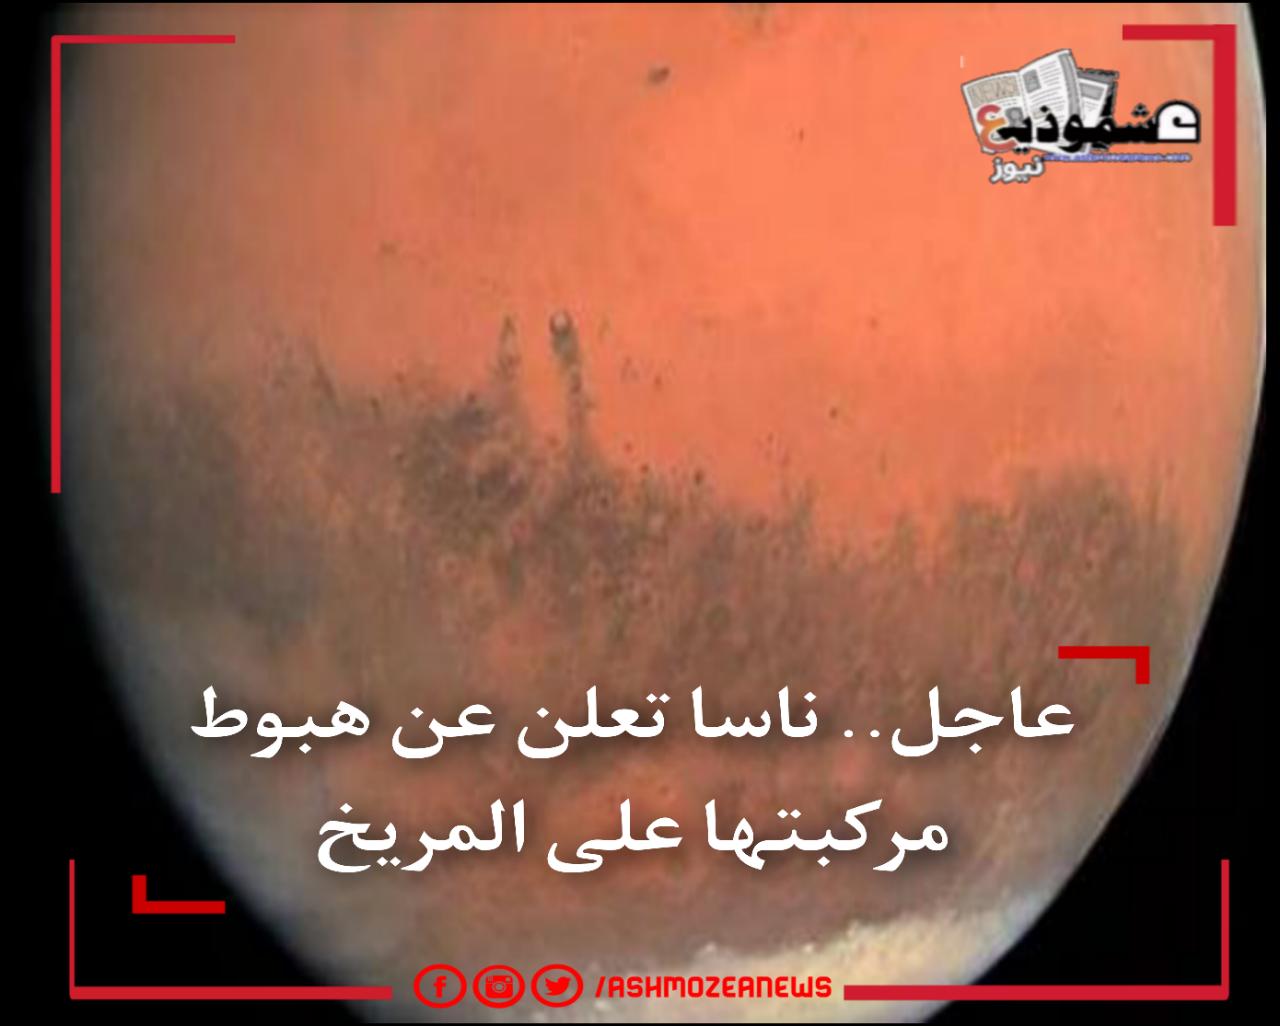 عاجل.. ناسا تعلن عن هبوط مركبتها على المريخ